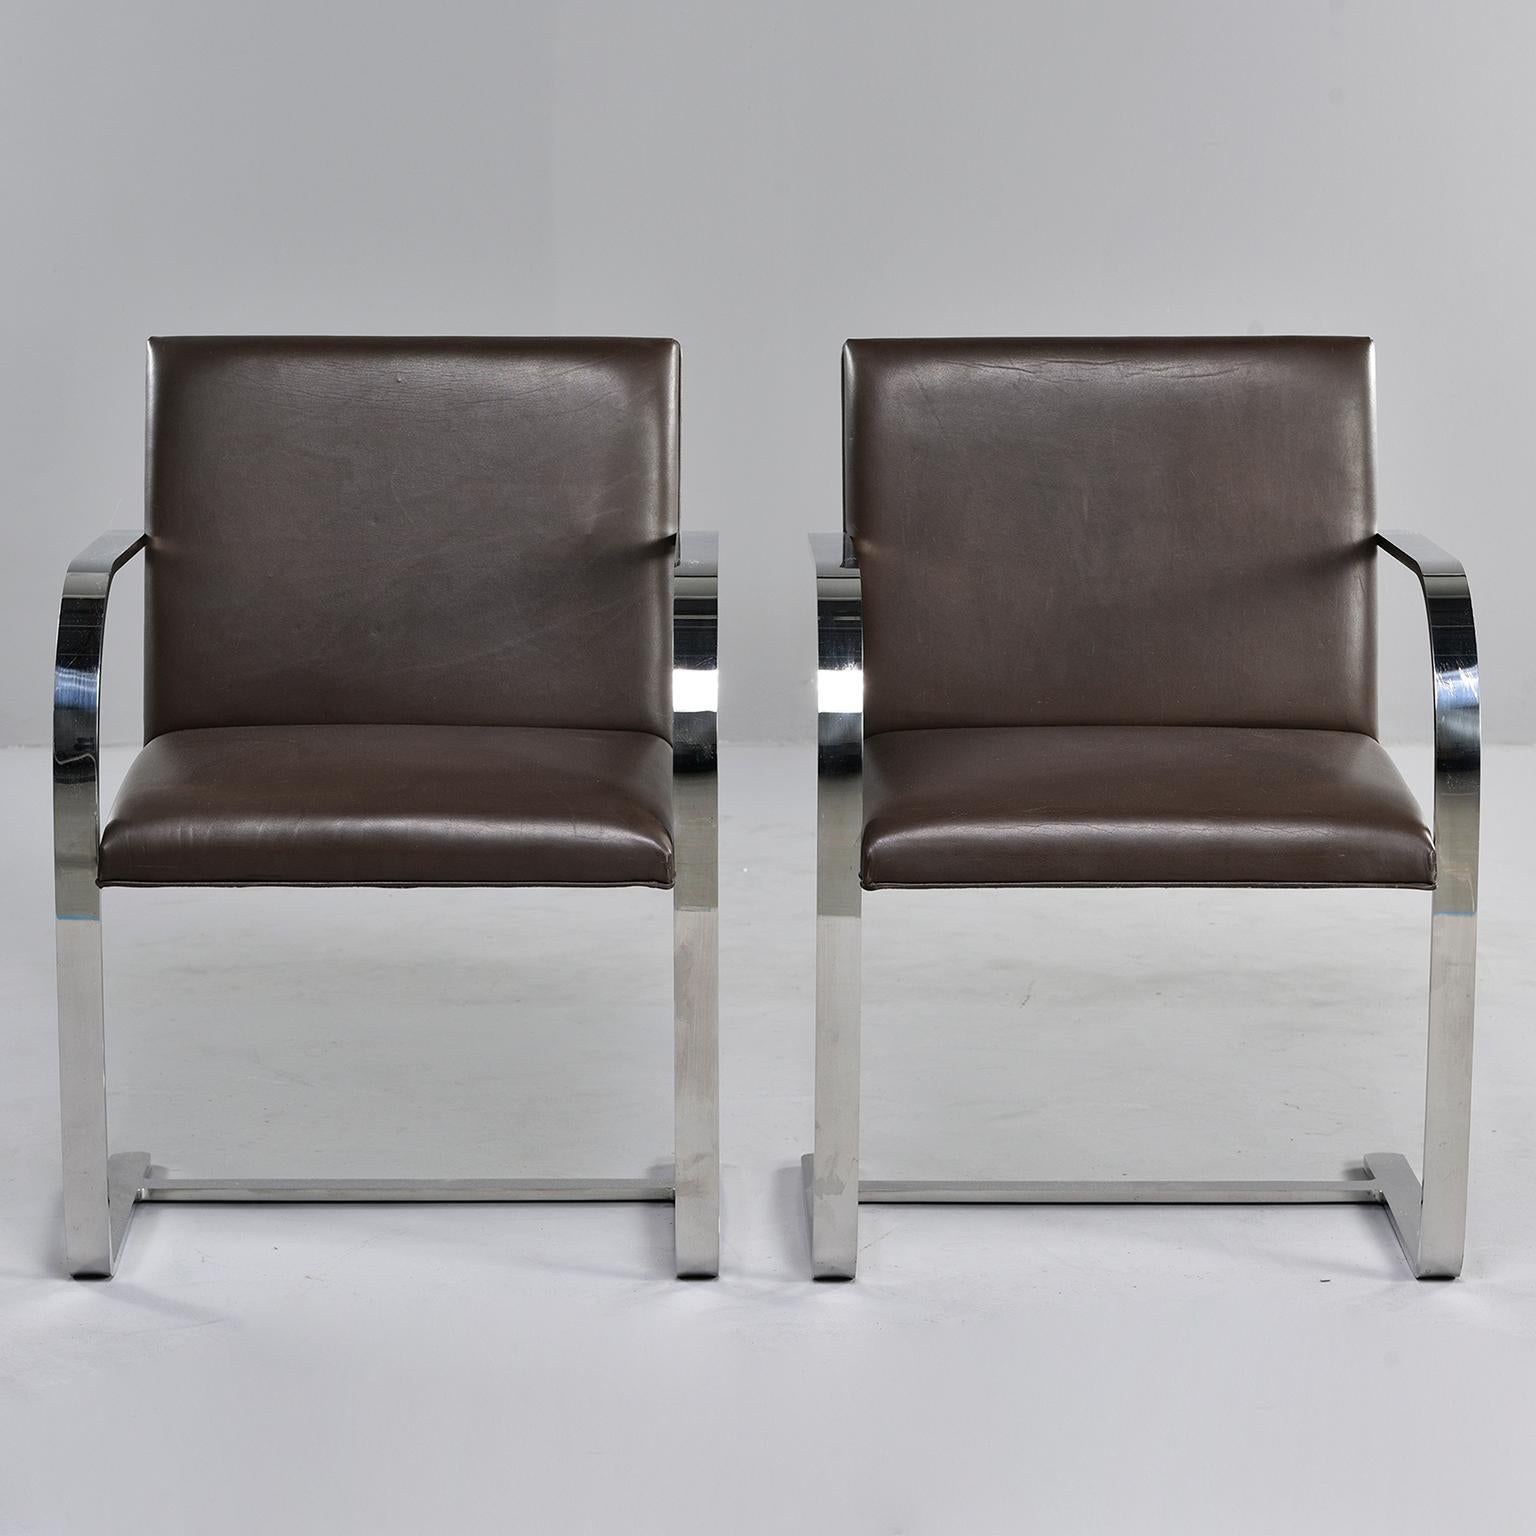 Dieses Paar echter Knoll Brno Stühle ist mit dunkelbraunem Leder gepolstert. Die 1930 von Mies van der Rohe entworfenen und noch heute von Knoll produzierten Stühle mit Lederbezug kosten derzeit 2630 Dollar pro Stück 
 